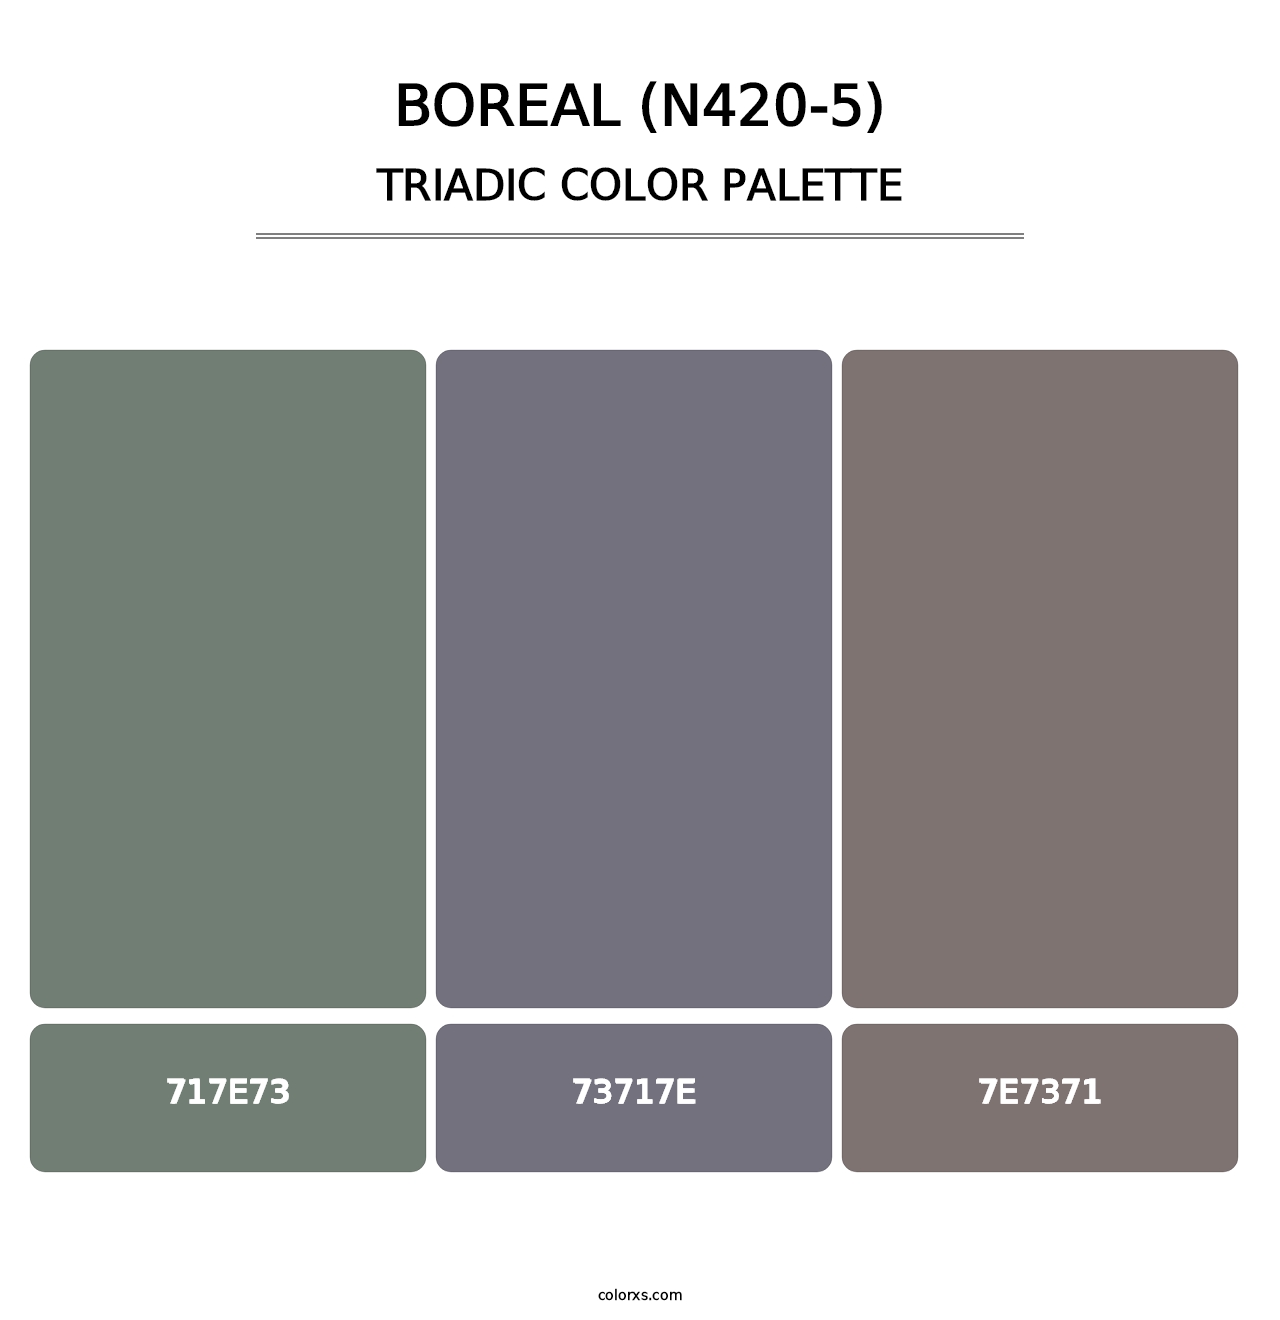 Boreal (N420-5) - Triadic Color Palette